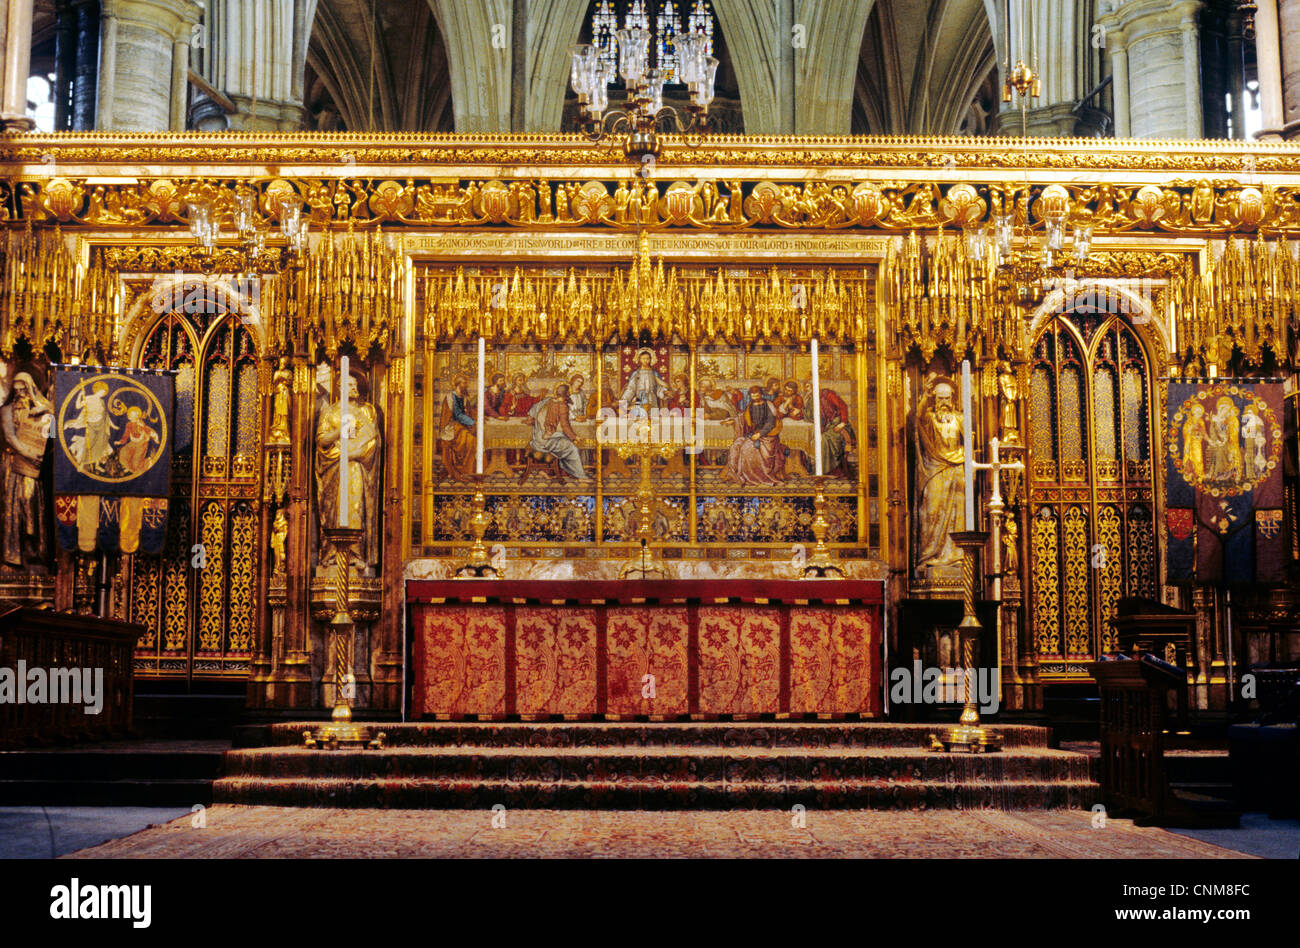 L'Abbazia di Westminster, l'Altare Maggiore Londra Inghilterra interni interno altari abbazie inglese Foto Stock